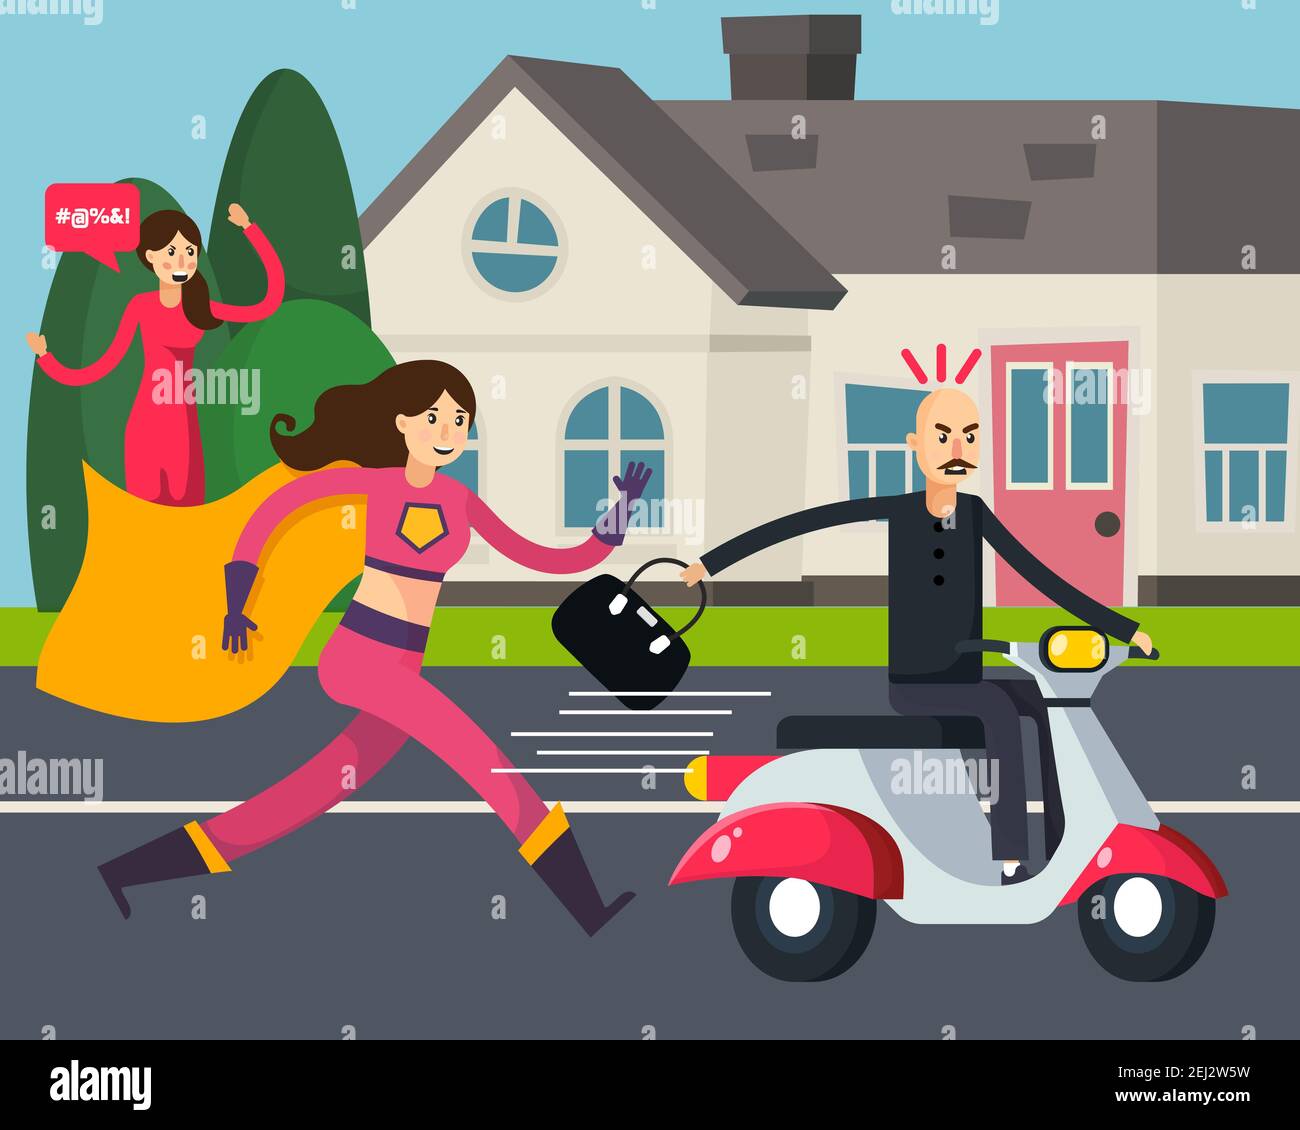 Super-héros composition orthogonale avec la femme en train de courir dans le manteau et le voleur avec sac volé sur l'illustration du vecteur de scooter Illustration de Vecteur